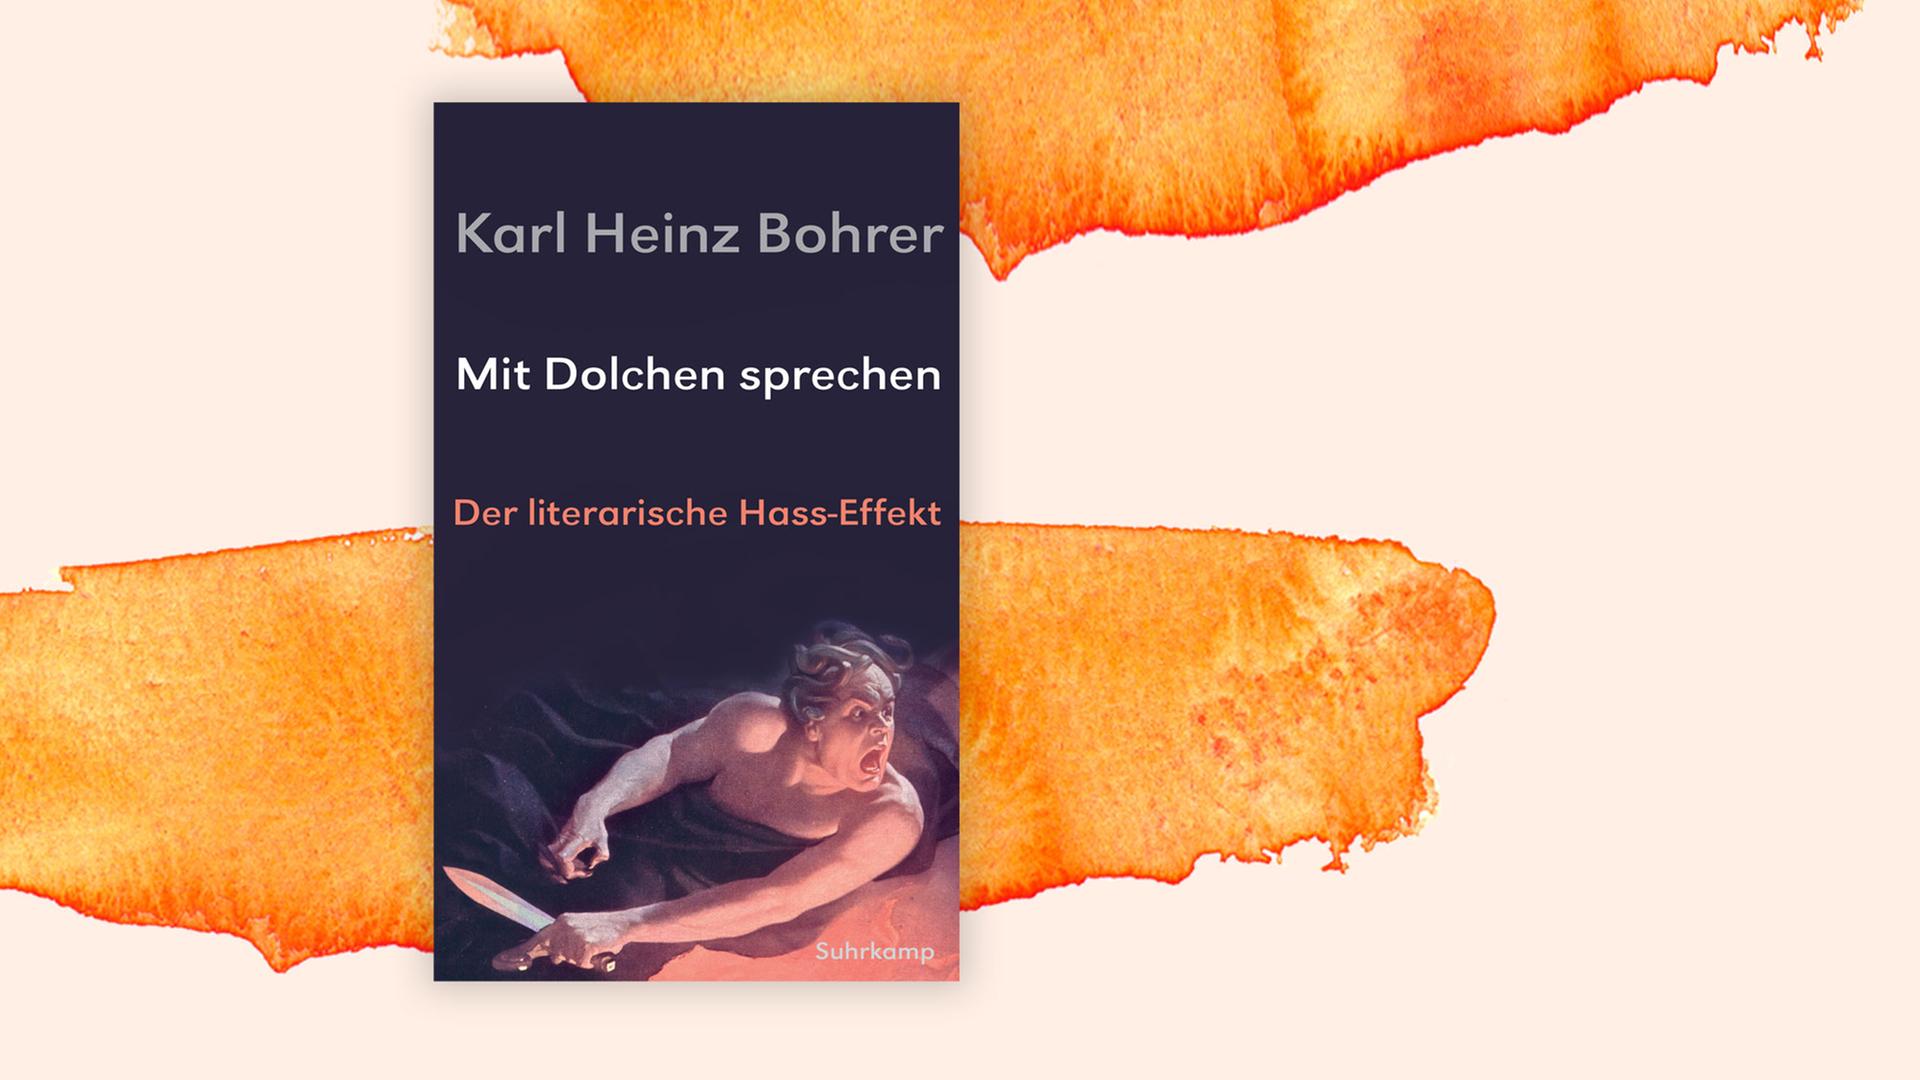 Cover von Karl Heinz Bohrer: "Mit Dolchen sprechen"